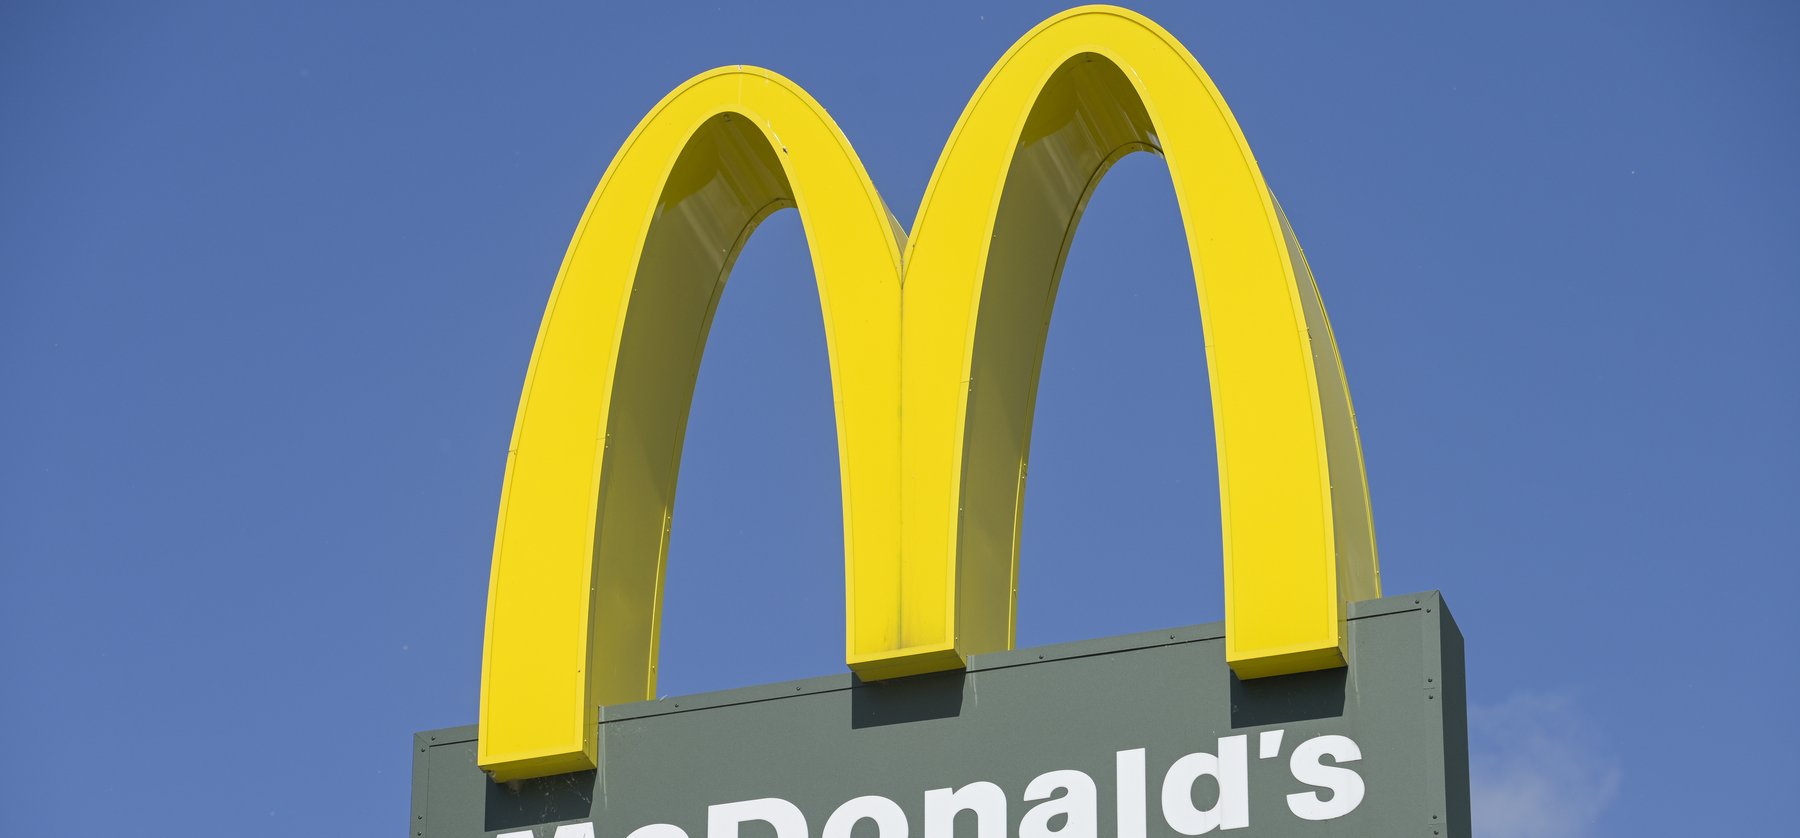 Komoly változás a magyar McDonald's-nál, ennek biztos, hogy sokan nem fognak örülni